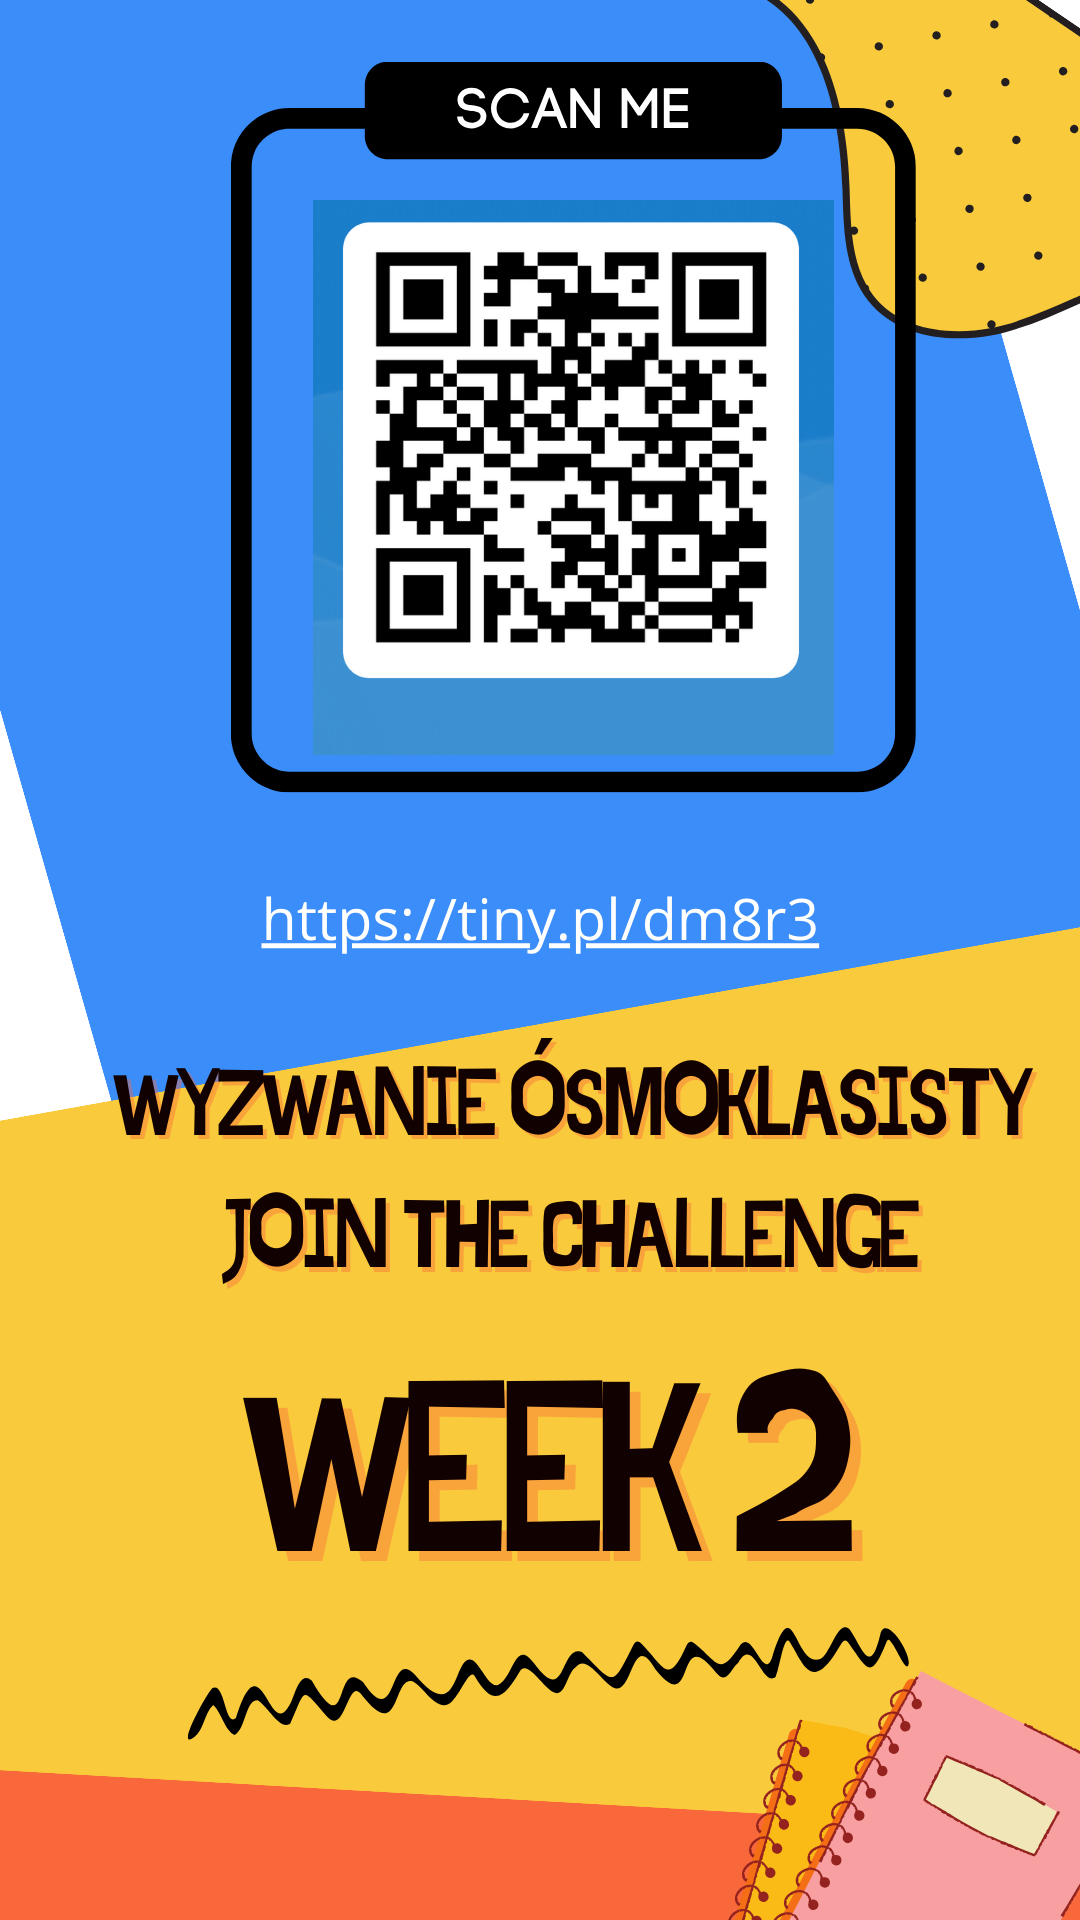 Wyzwanie ósmoklasisty - week 2